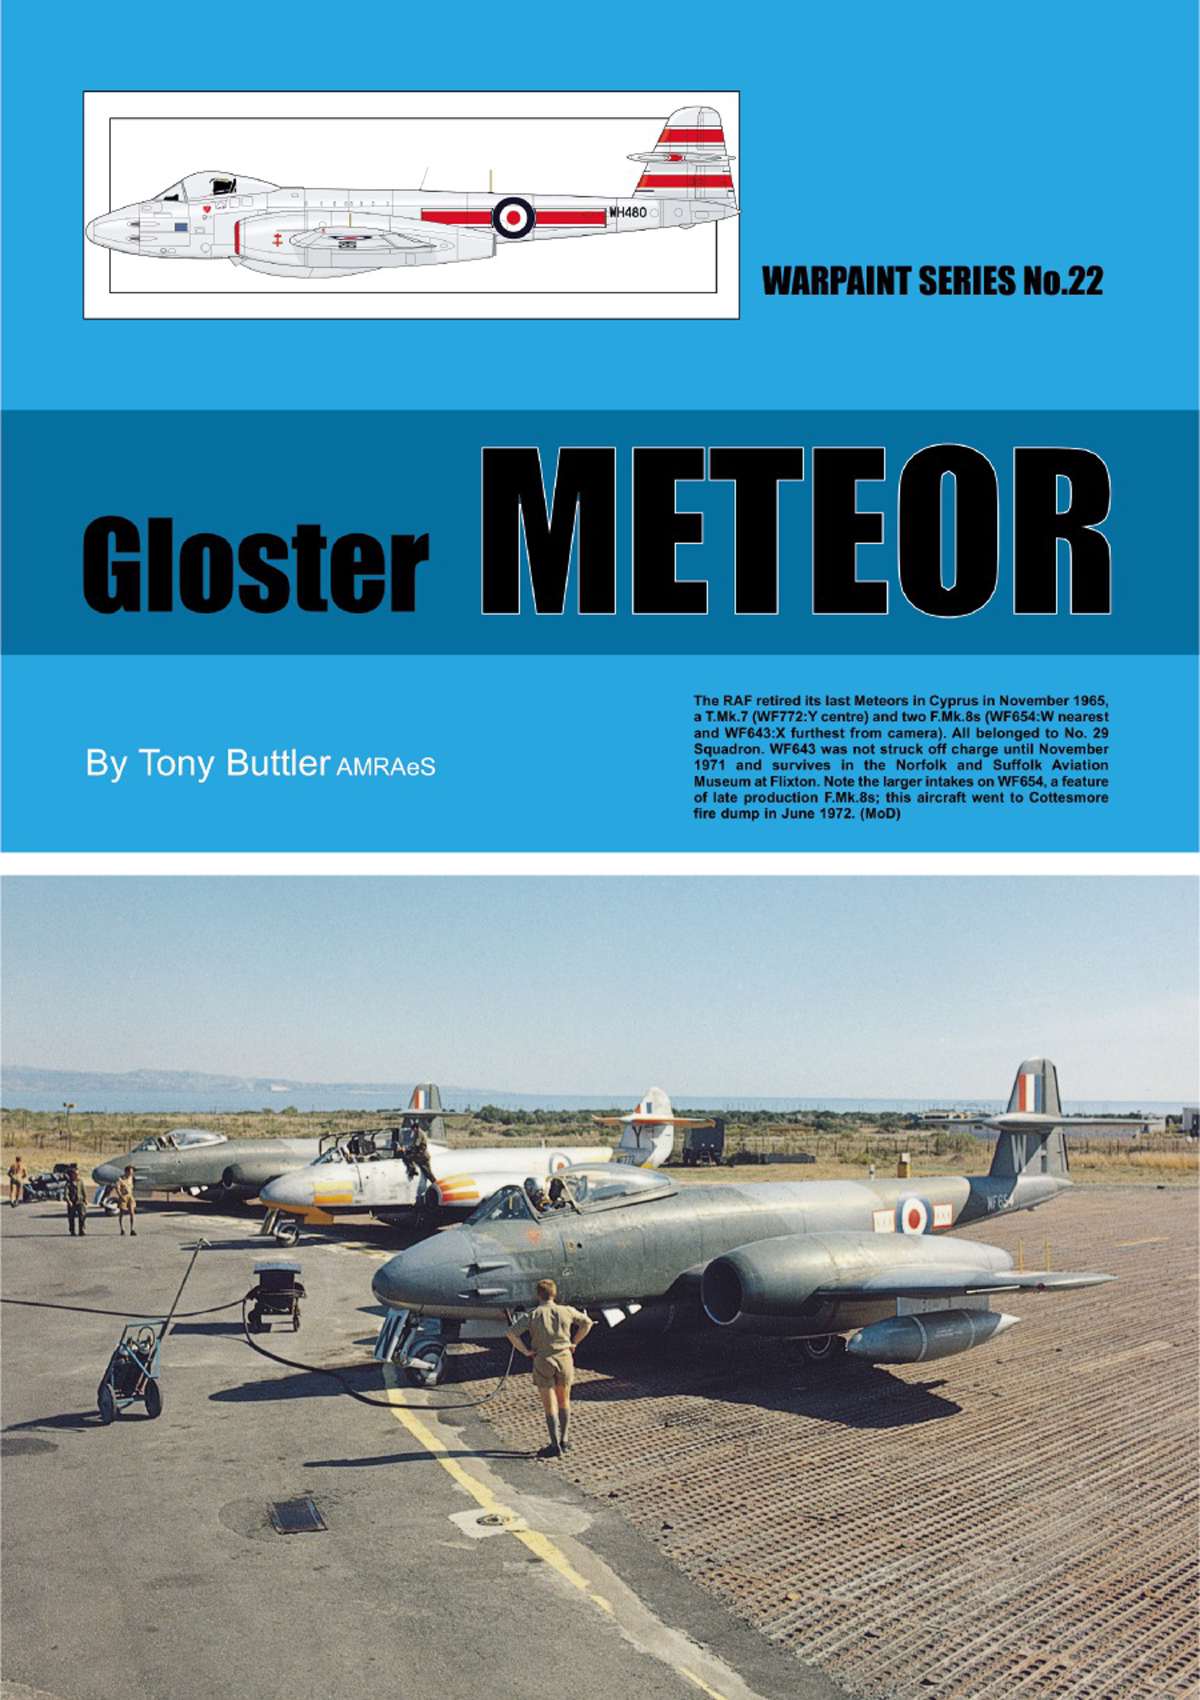 N22 - Gloster Meteor